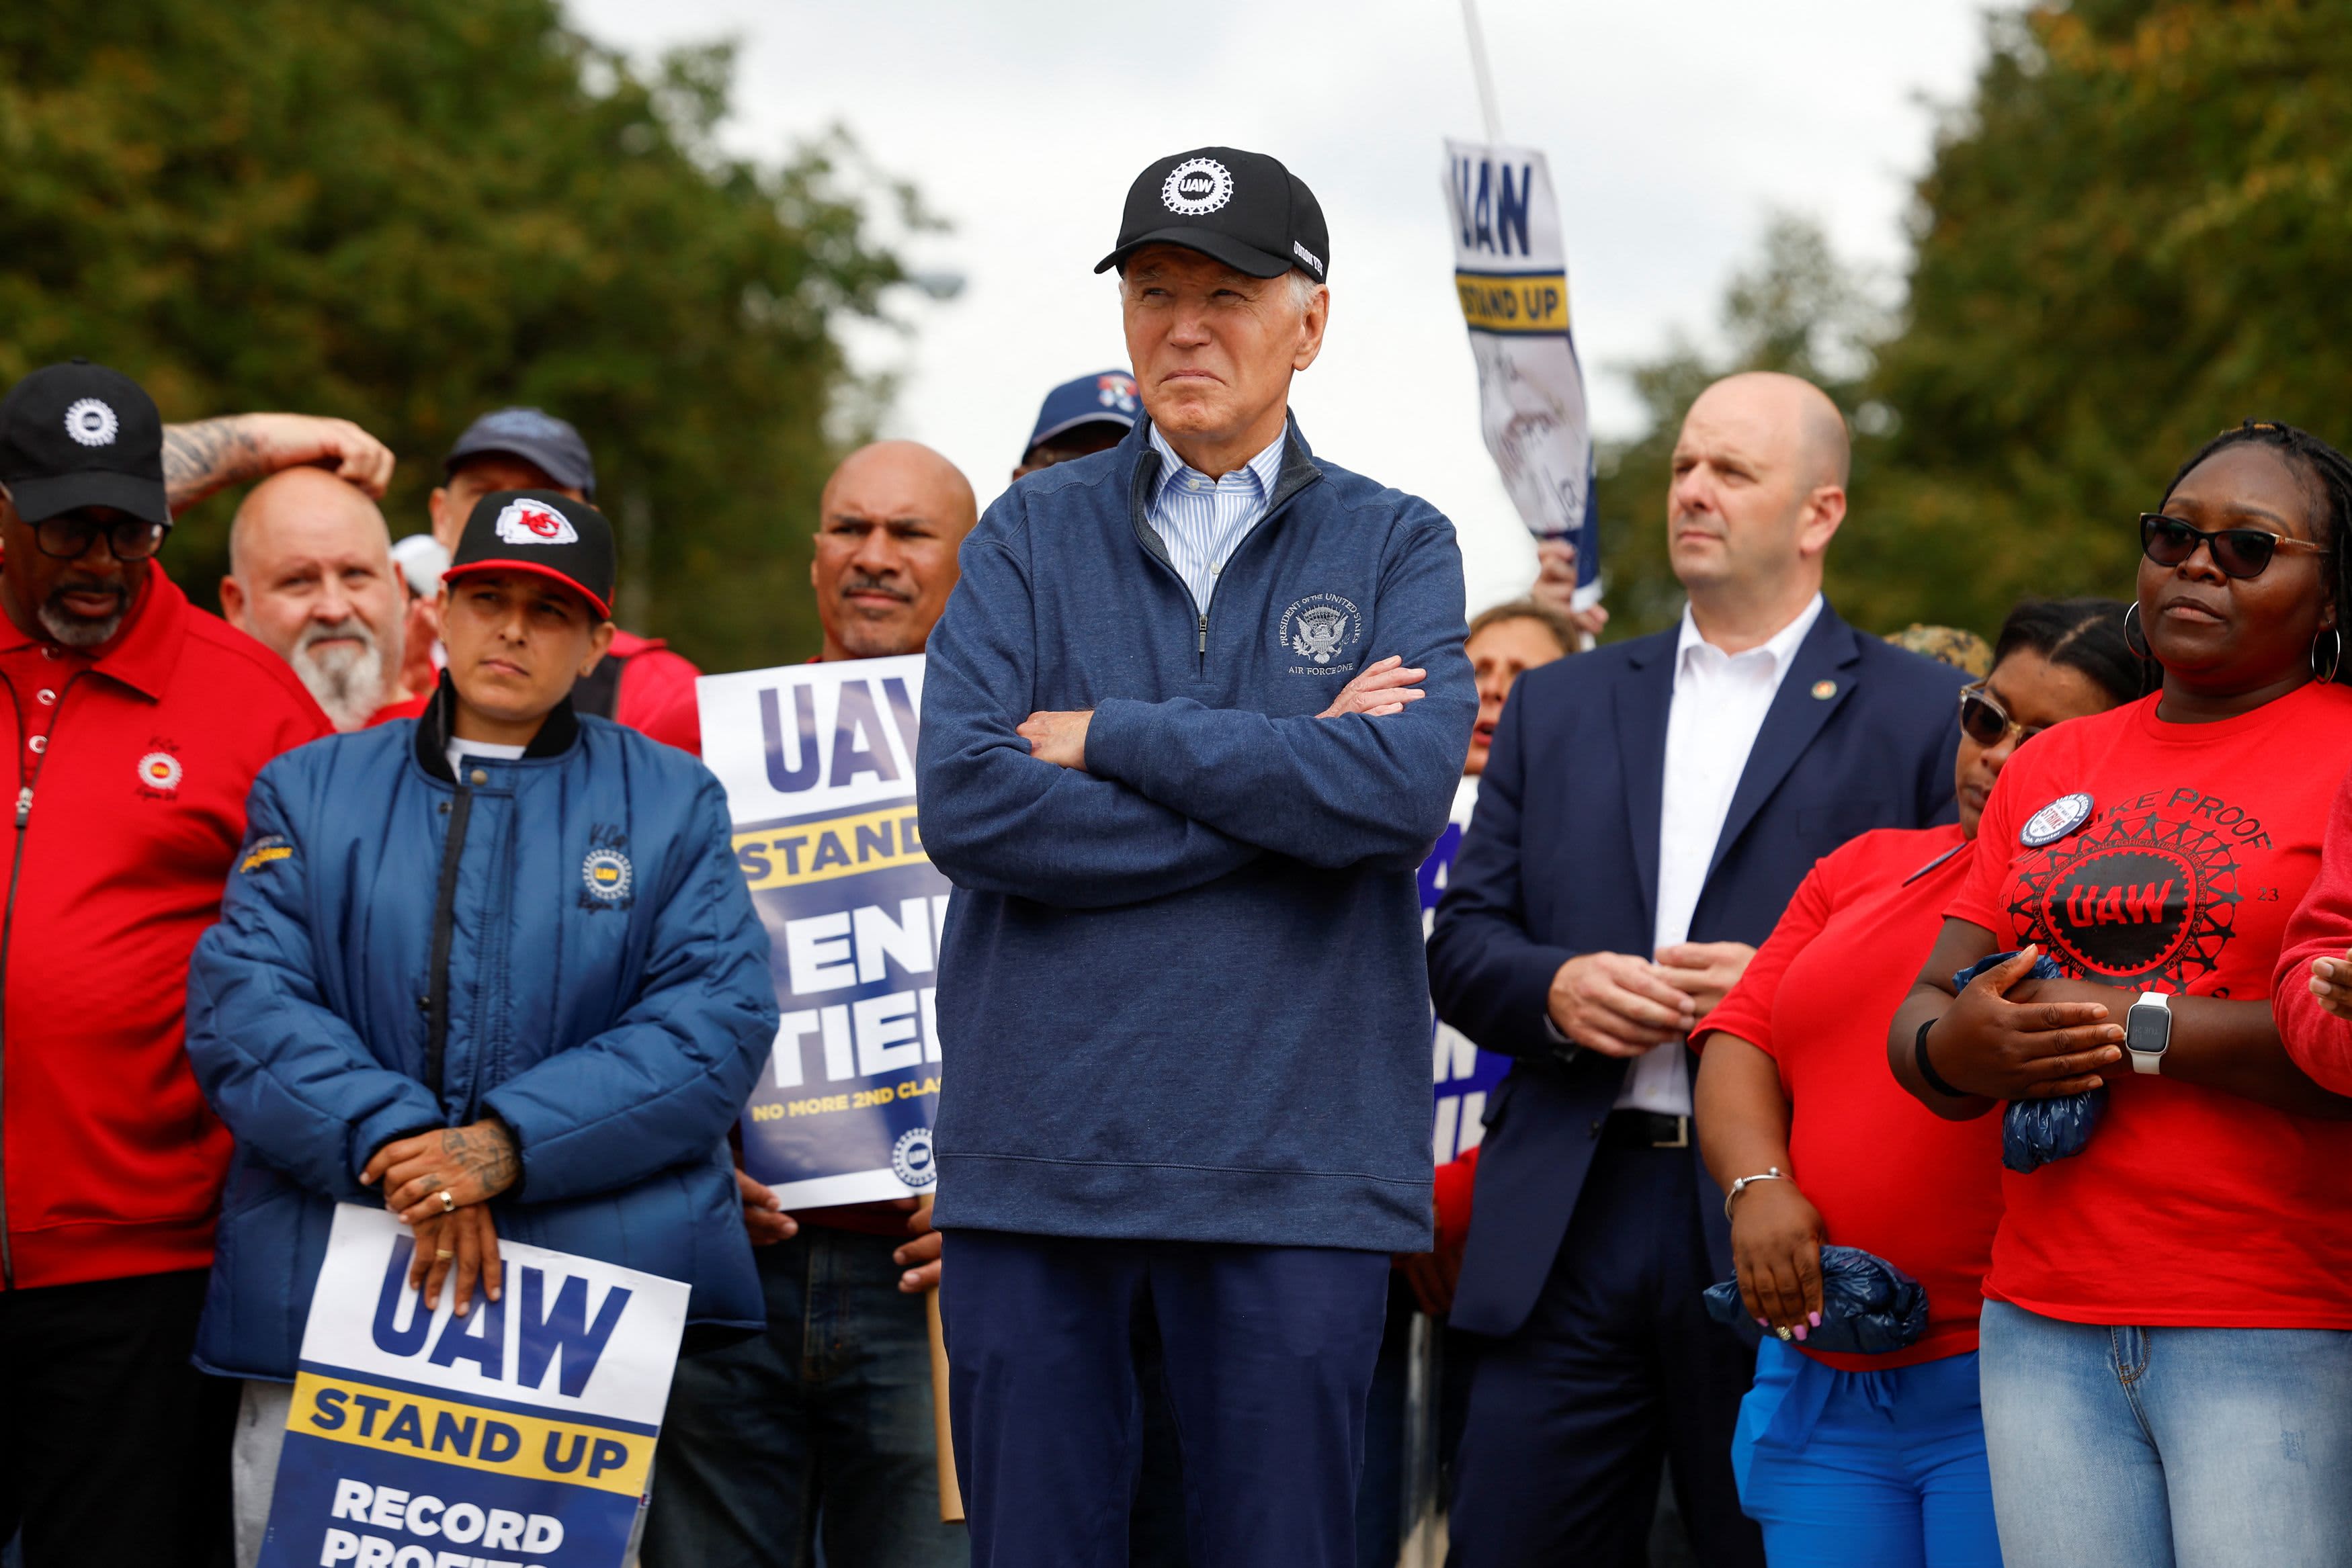 President Biden visits UAW picket line as strike against top U.S. car companies persists